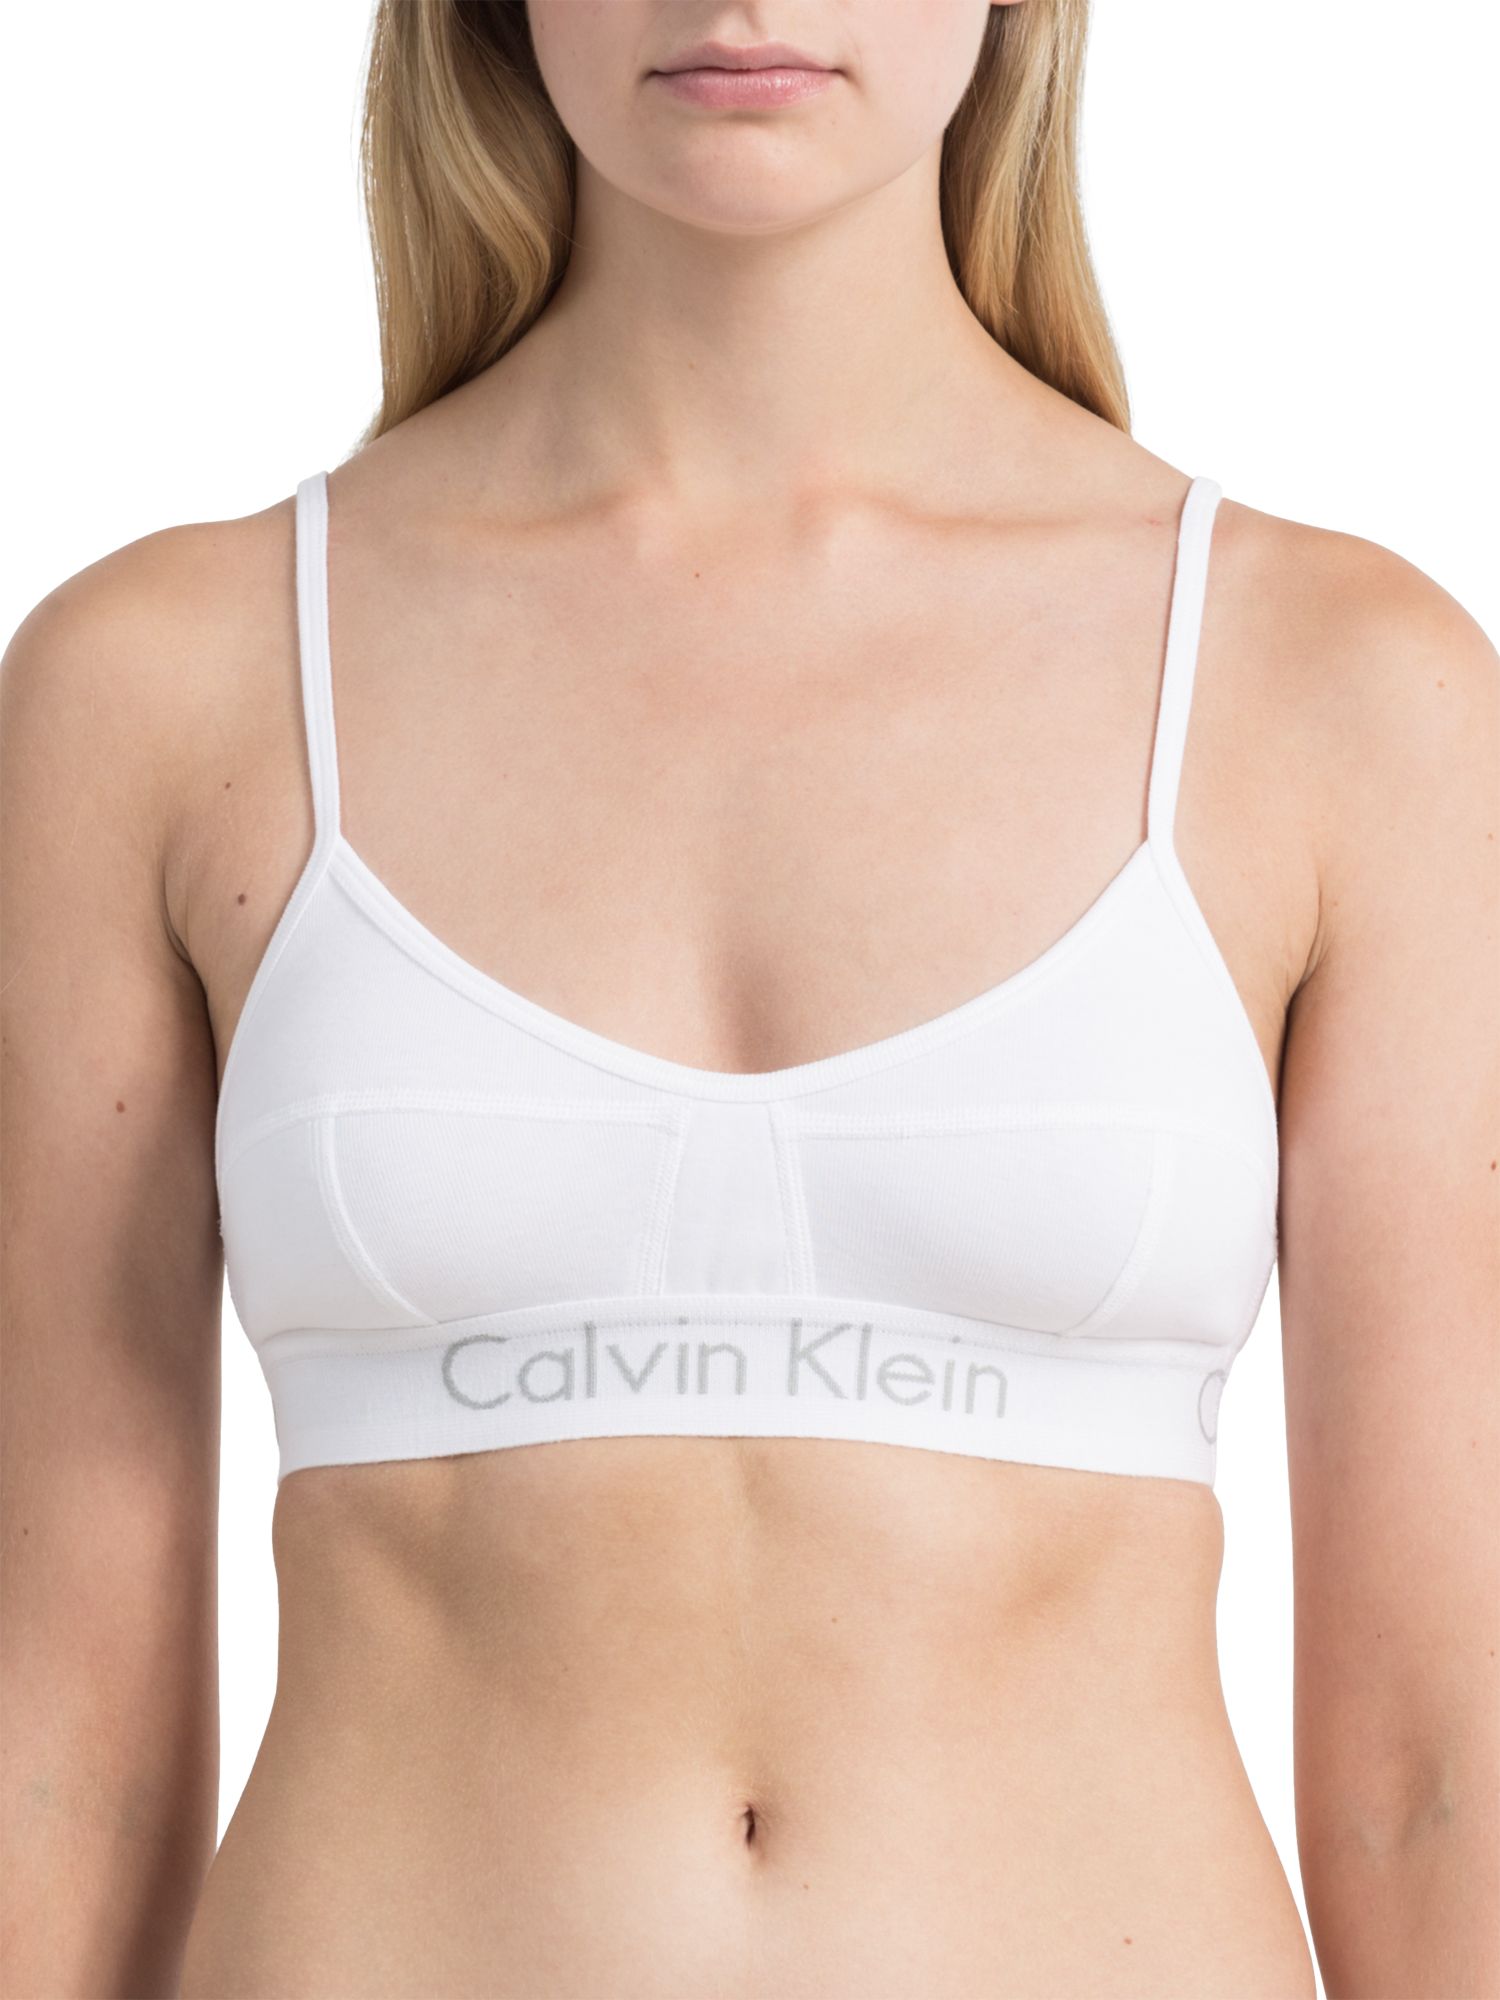 white calvin klein bra and underwear